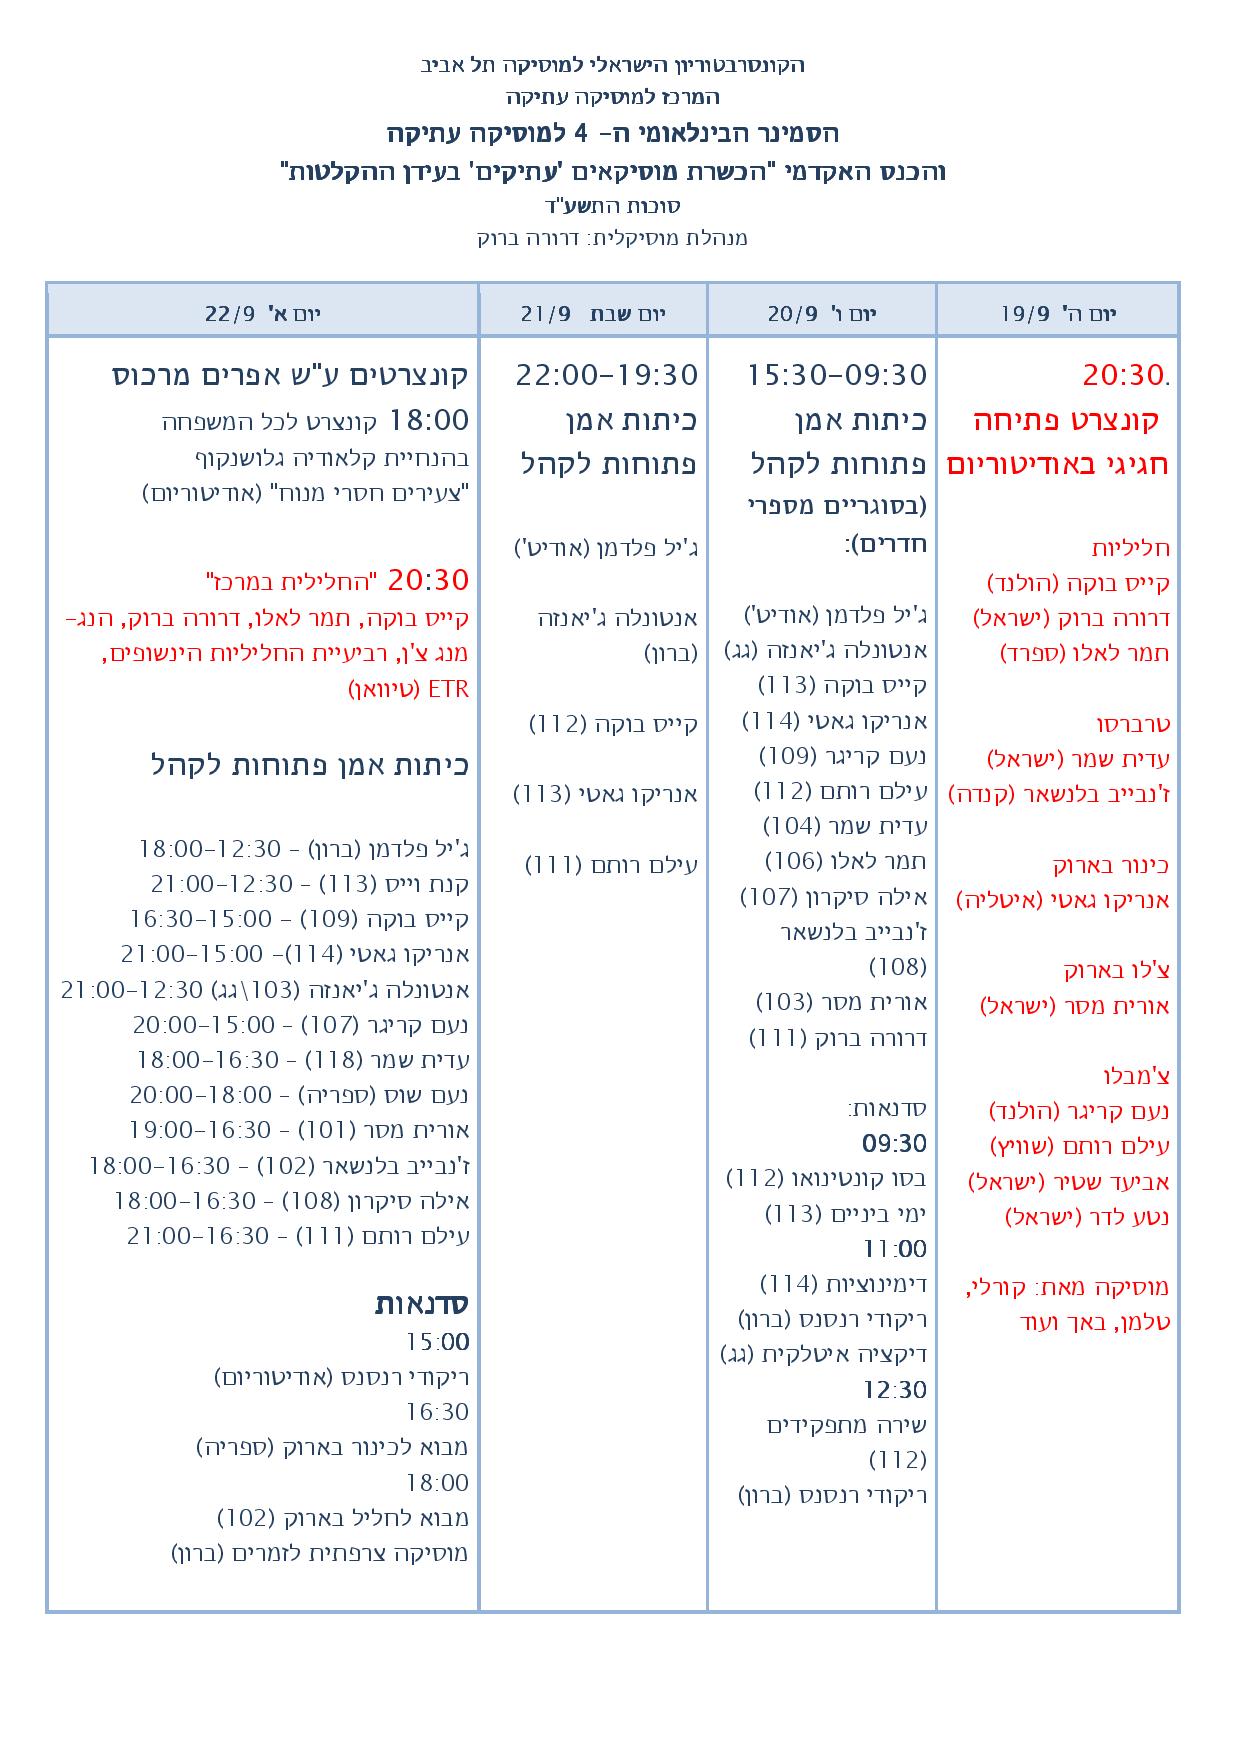 פי די אף טבלה לפרסום - עברית-page-001